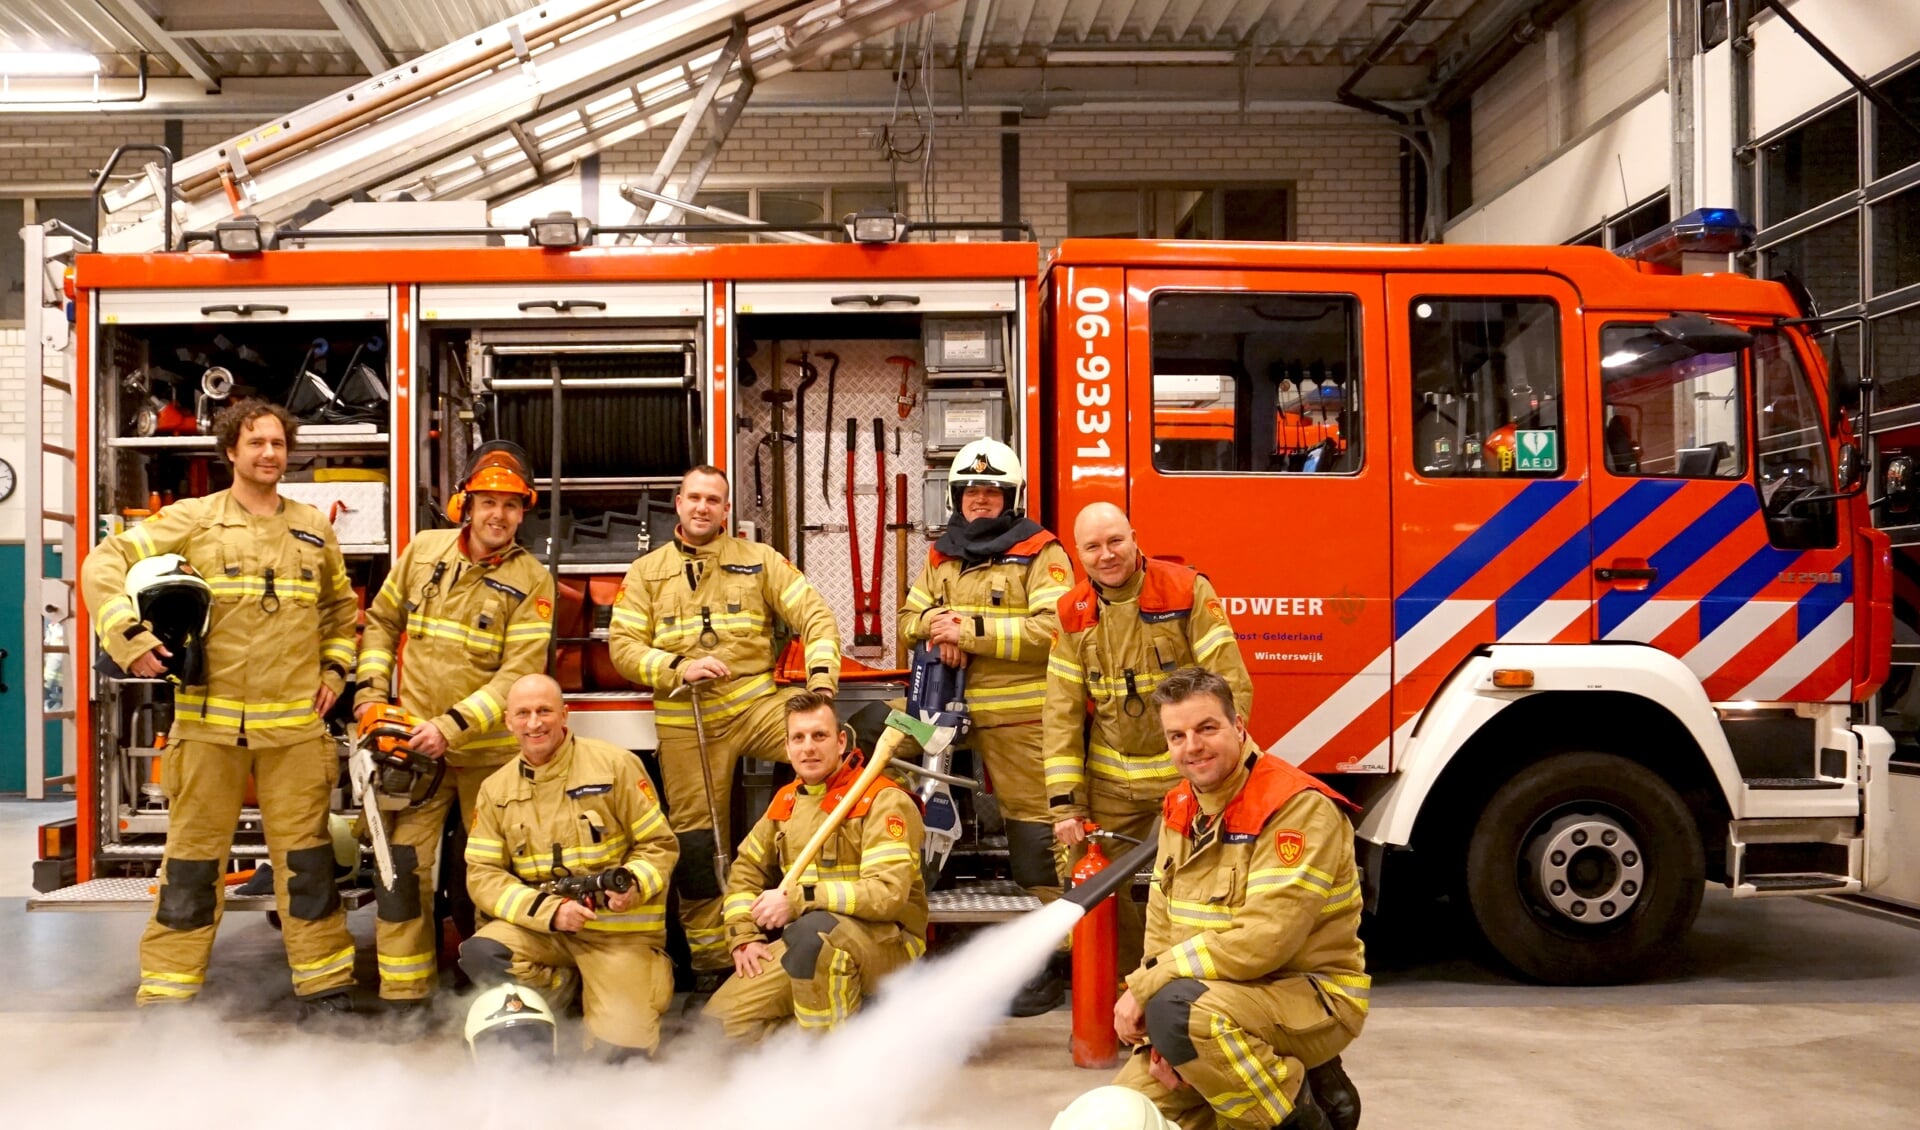 Brandweer Winterswijk kan nieuwe vrijwilligers gebruiken. Foto: PR Brandweer Winterswijk